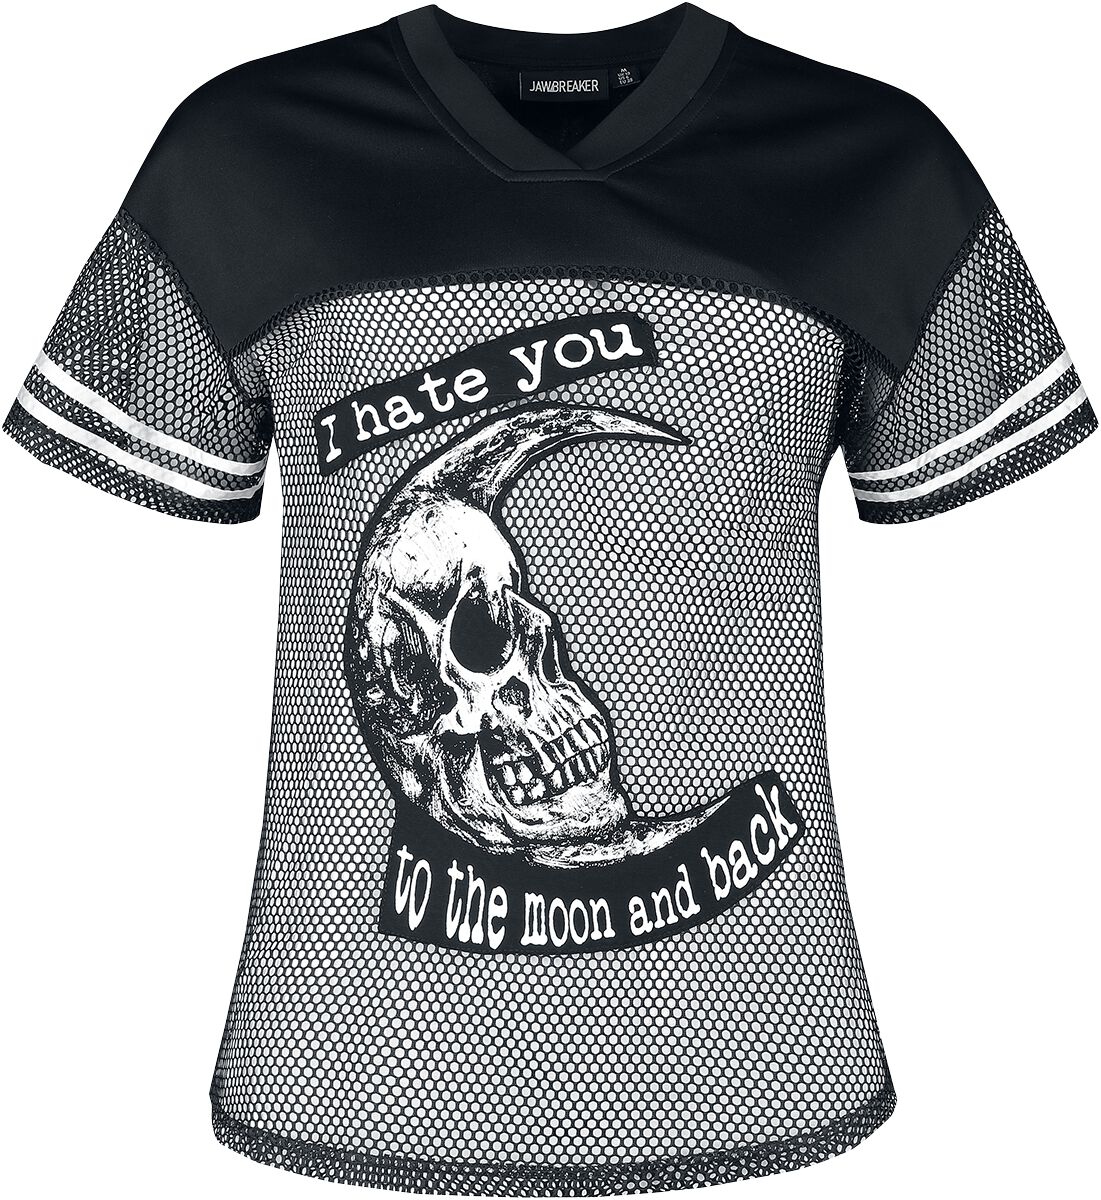 Jawbreaker - Gothic T-Shirt - To The Moon And Back Tee - XS bis XXL - für Damen - Größe XS - schwarz/weiß